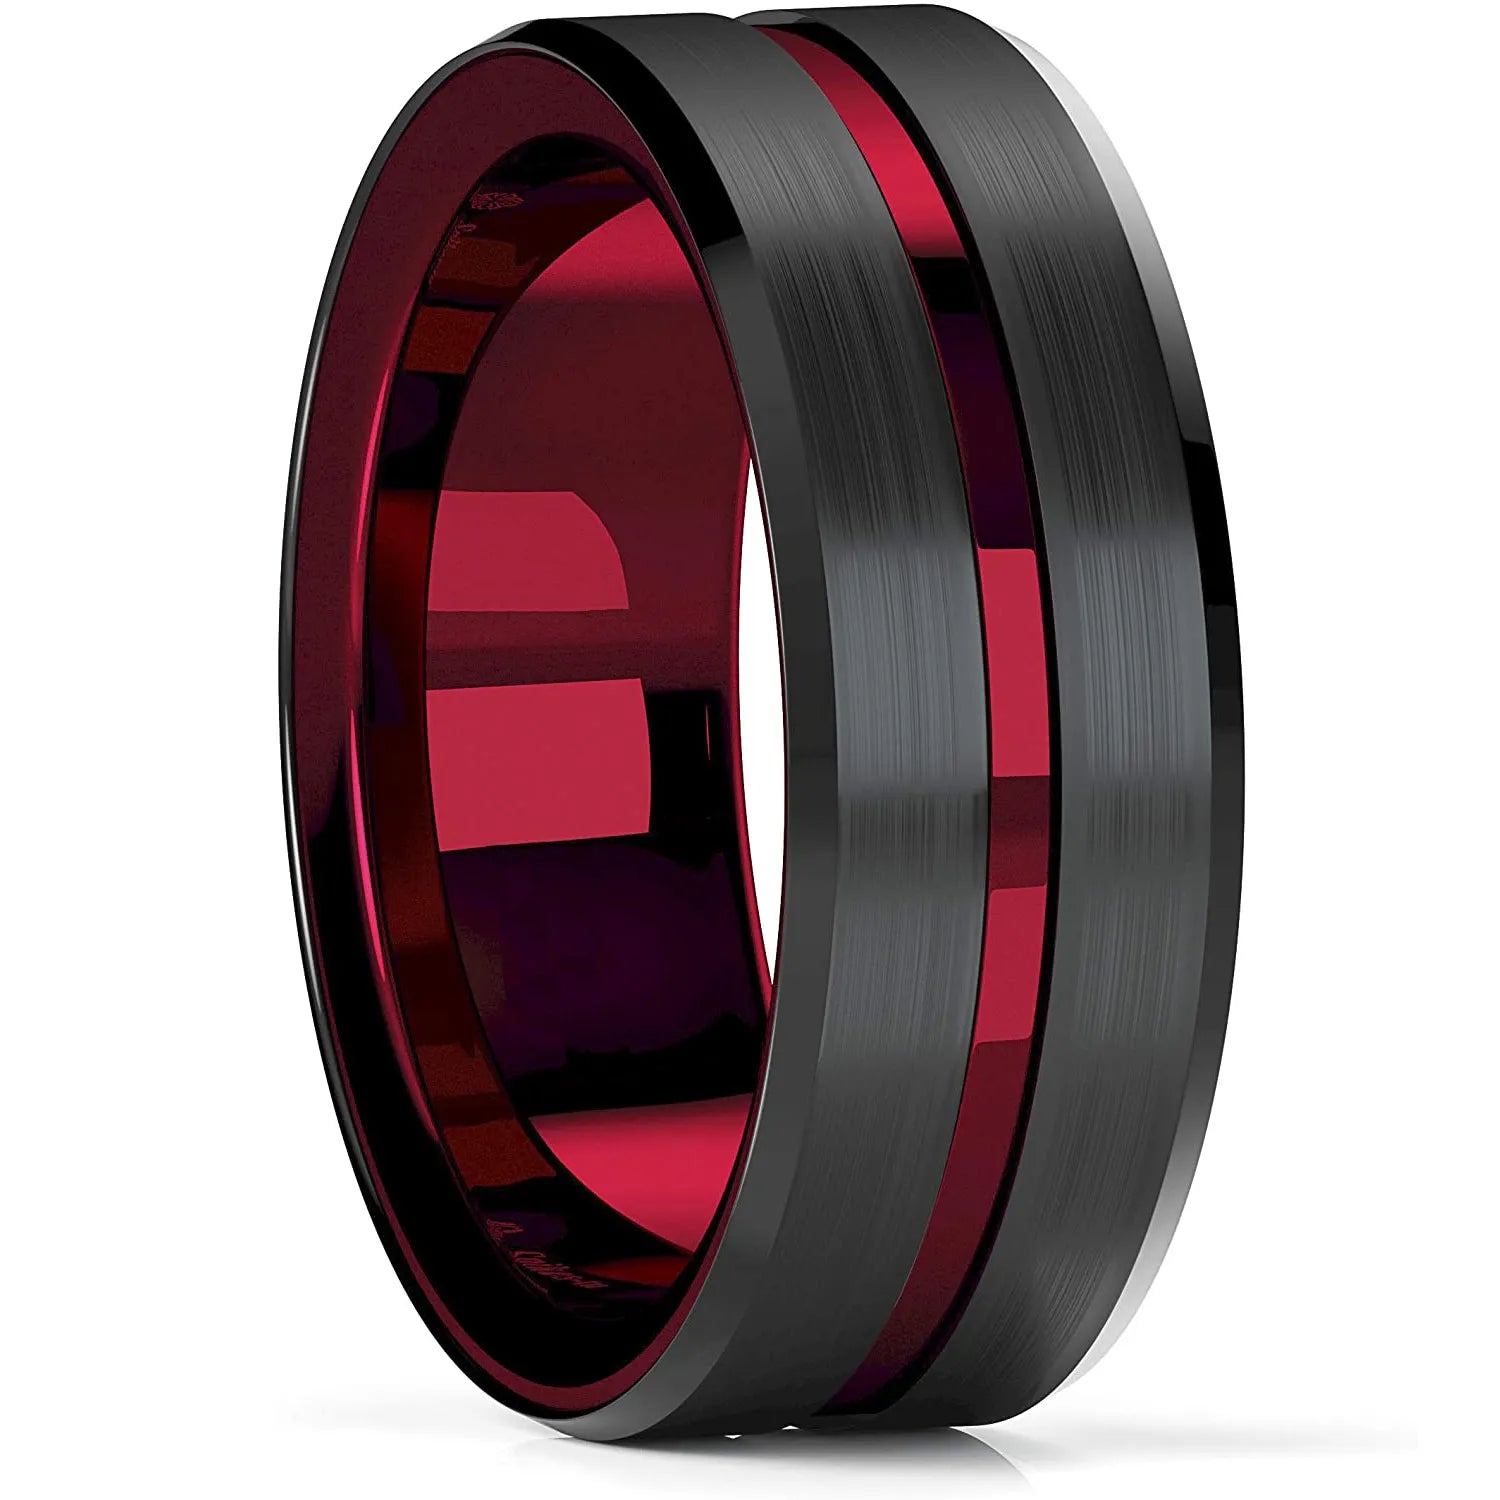 Trendy Men's 8mm Black Titanium Wedding Band Rings Double Black Groove Beveled Edge Stainless Steel Engagement Ring For Men